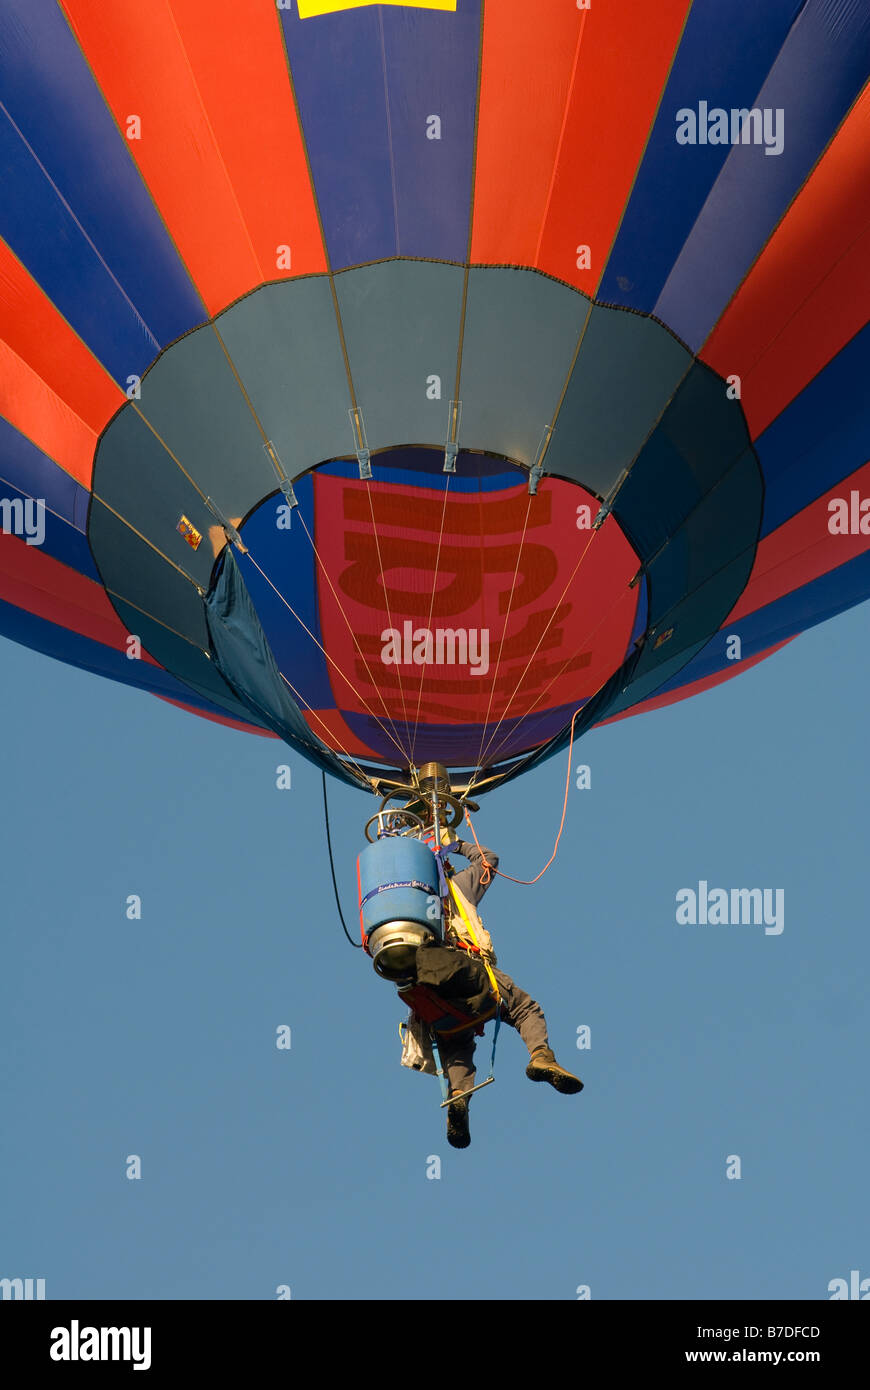 Pilote dans un cloudhopper hot air balloon voler dans un ciel bleu Banque D'Images